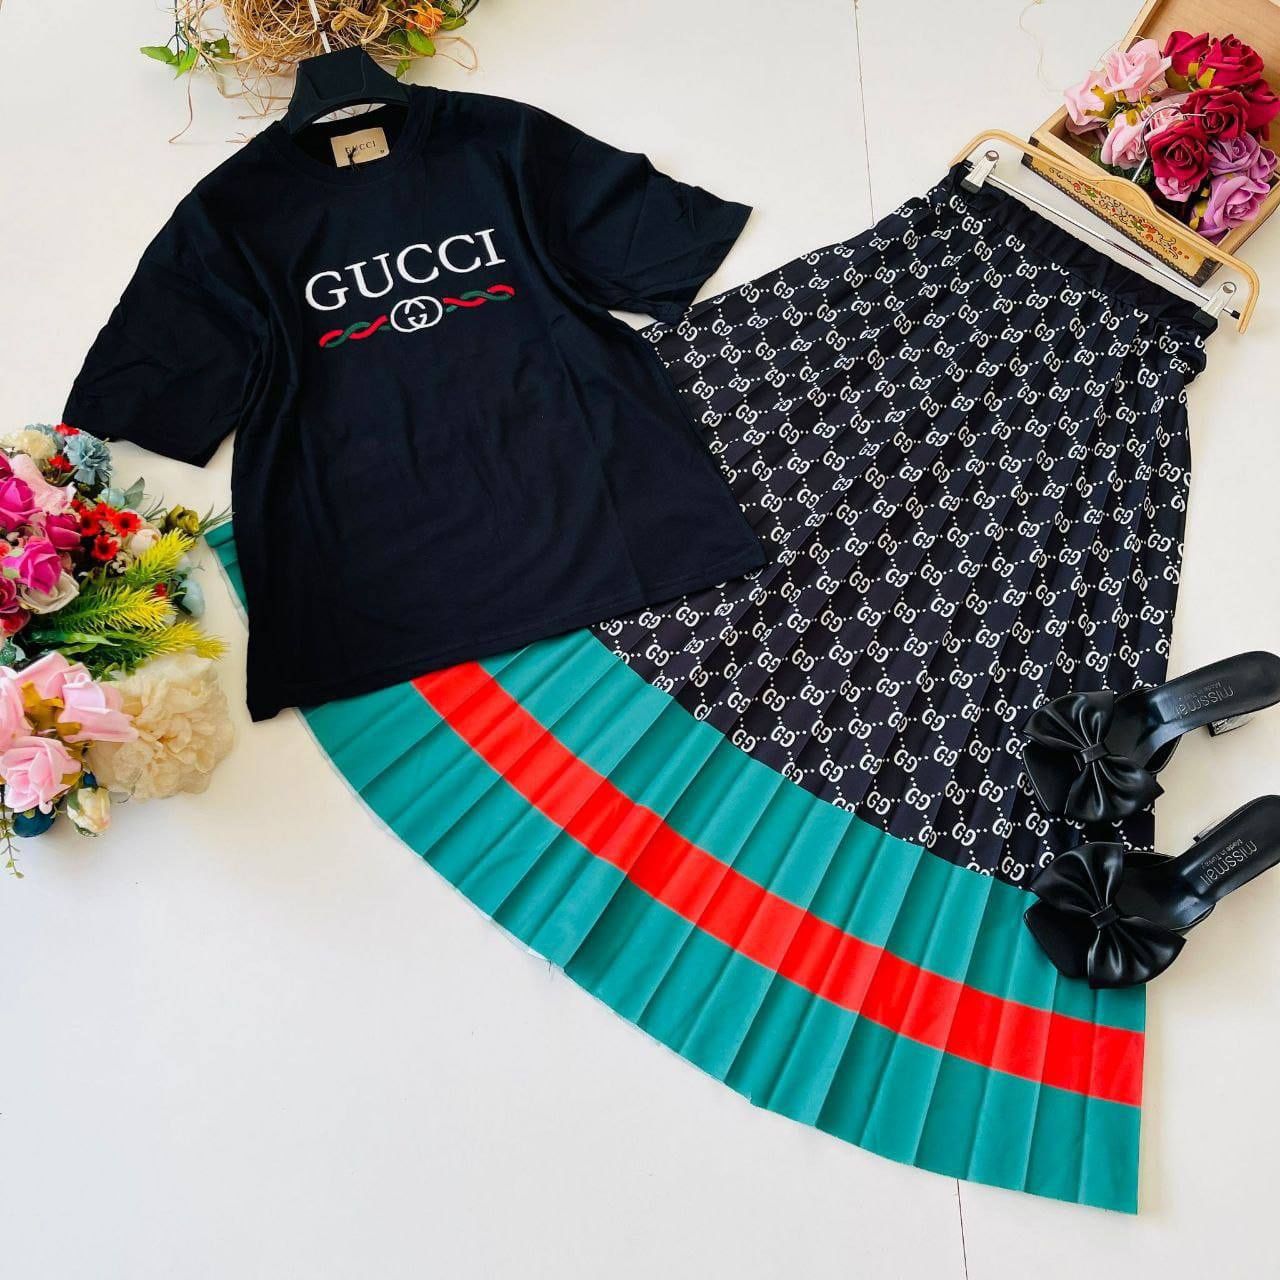 Seturi damă Gucci ,tricou + fusta lungă ,sigla cusută.